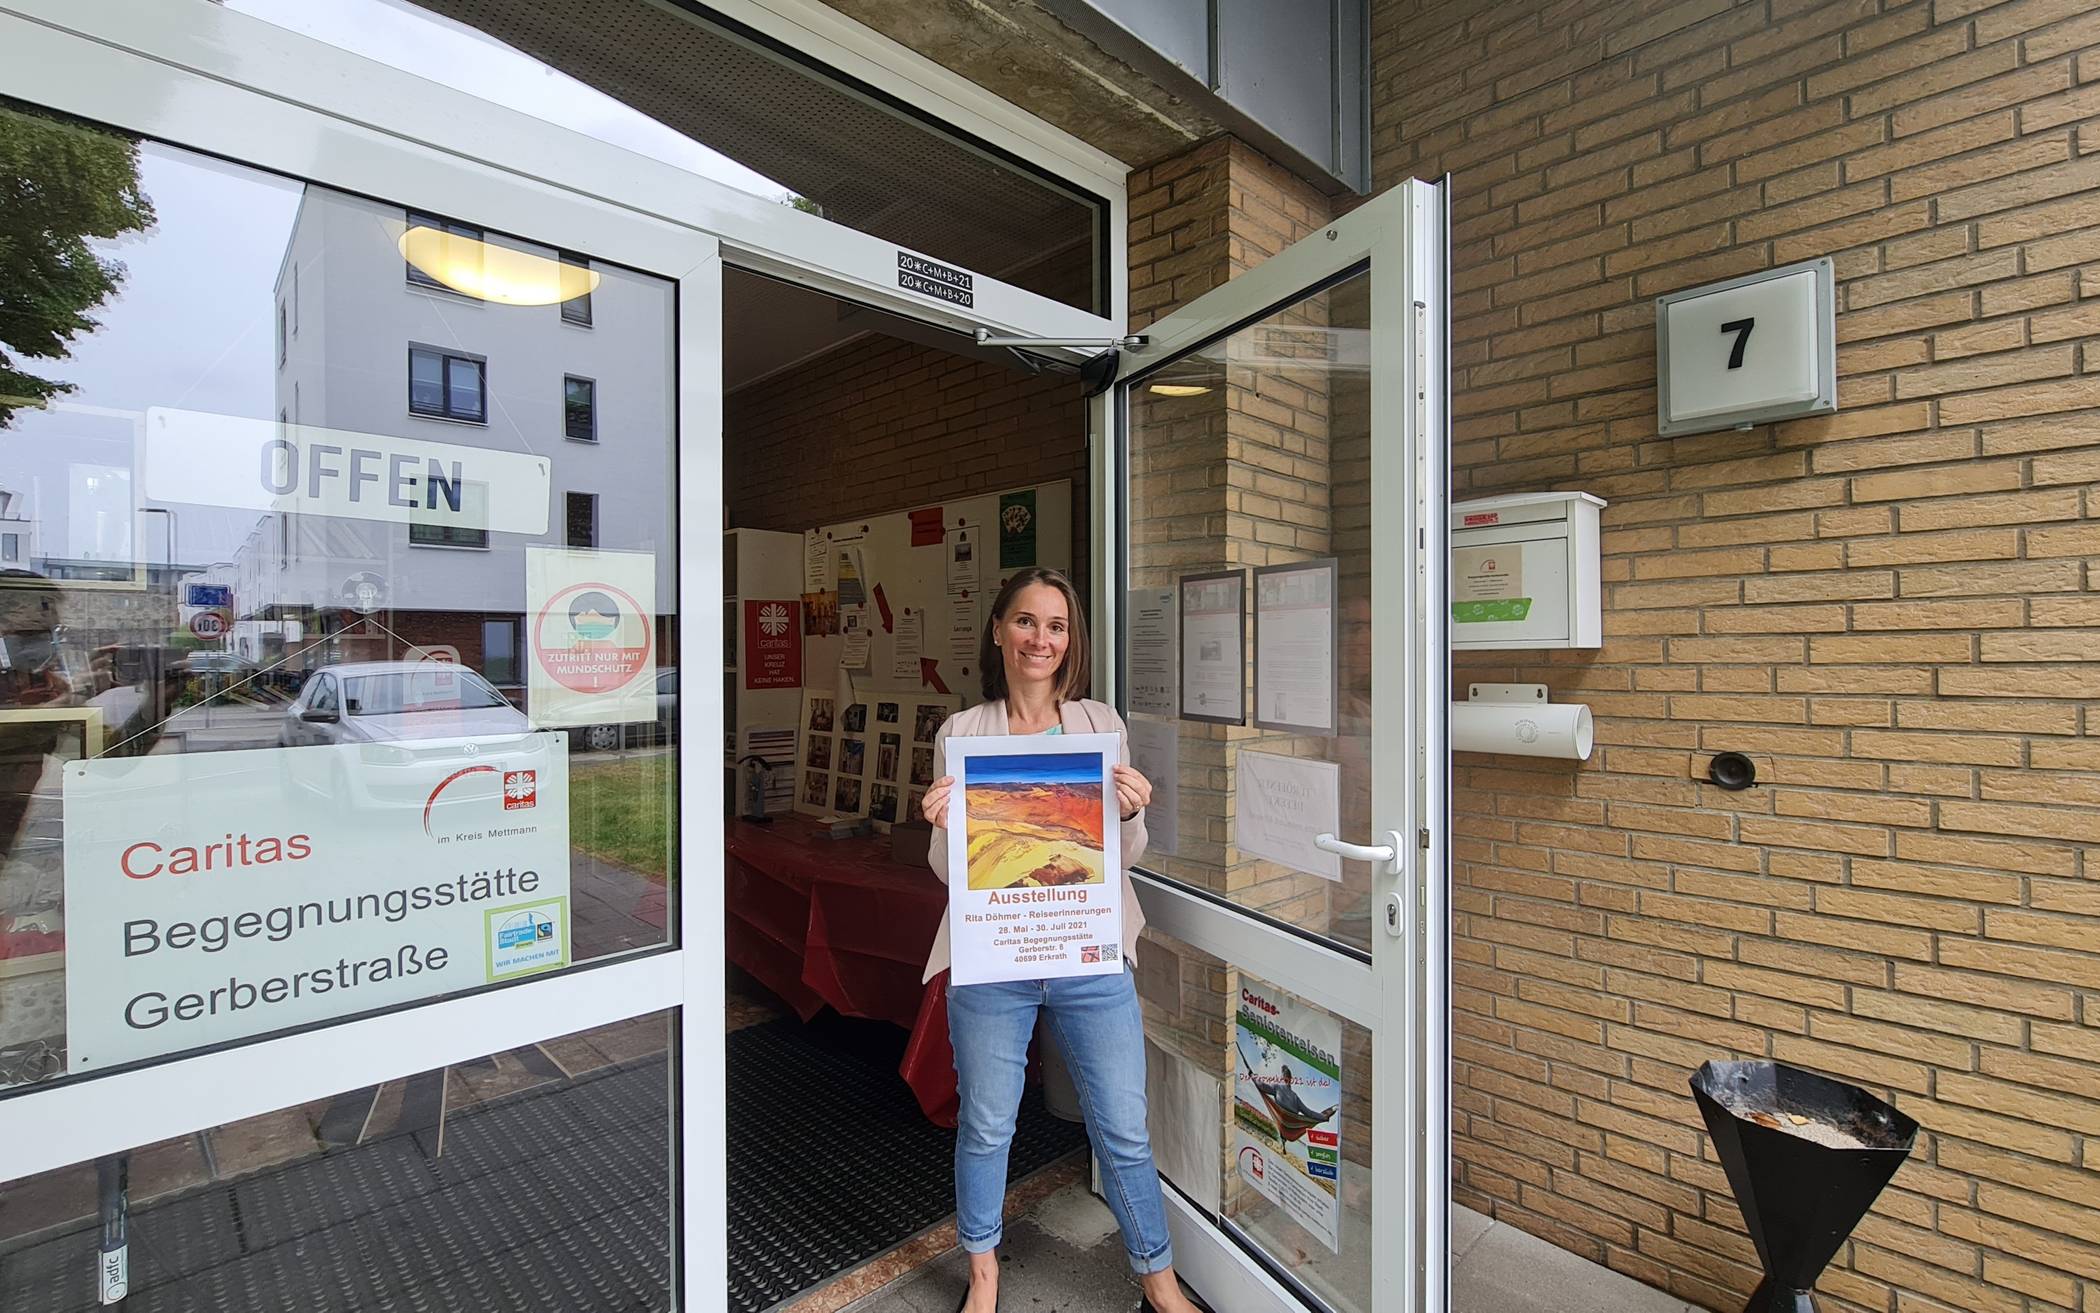  Anita Hungele freut sich, dass sie die Begegnungsstätte Gerberstraße wieder für Gruppenangebote öffnen darf. Mehr Infos dazu gibt es unter Telefon 0211/243553. 